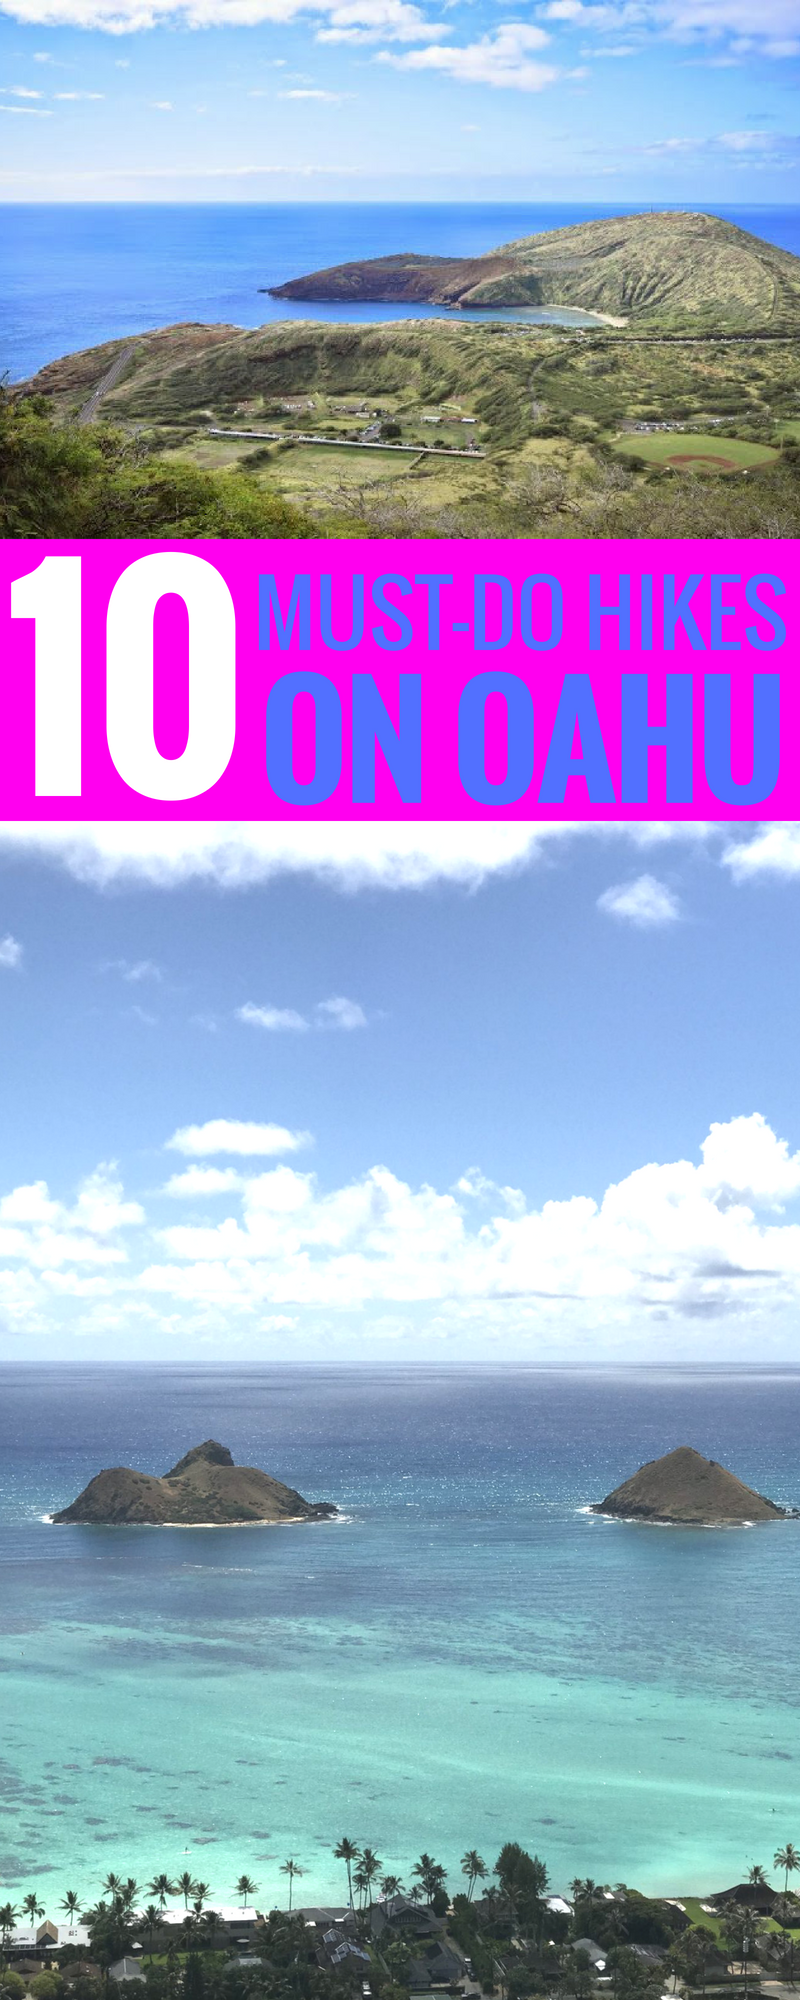 10 Best Hikes On Oahu - Hikes In Oahu - Top Oahu Hikes - Hiking In Hawaii - Best Hawaii Hikes - Best Oahu Trails - Beautiful Oahu Hikes - Communikait by Kait Hanson #hawaii #oahu #hiking #travel #honolulu #hikinginhawaii #bestoahuhikes